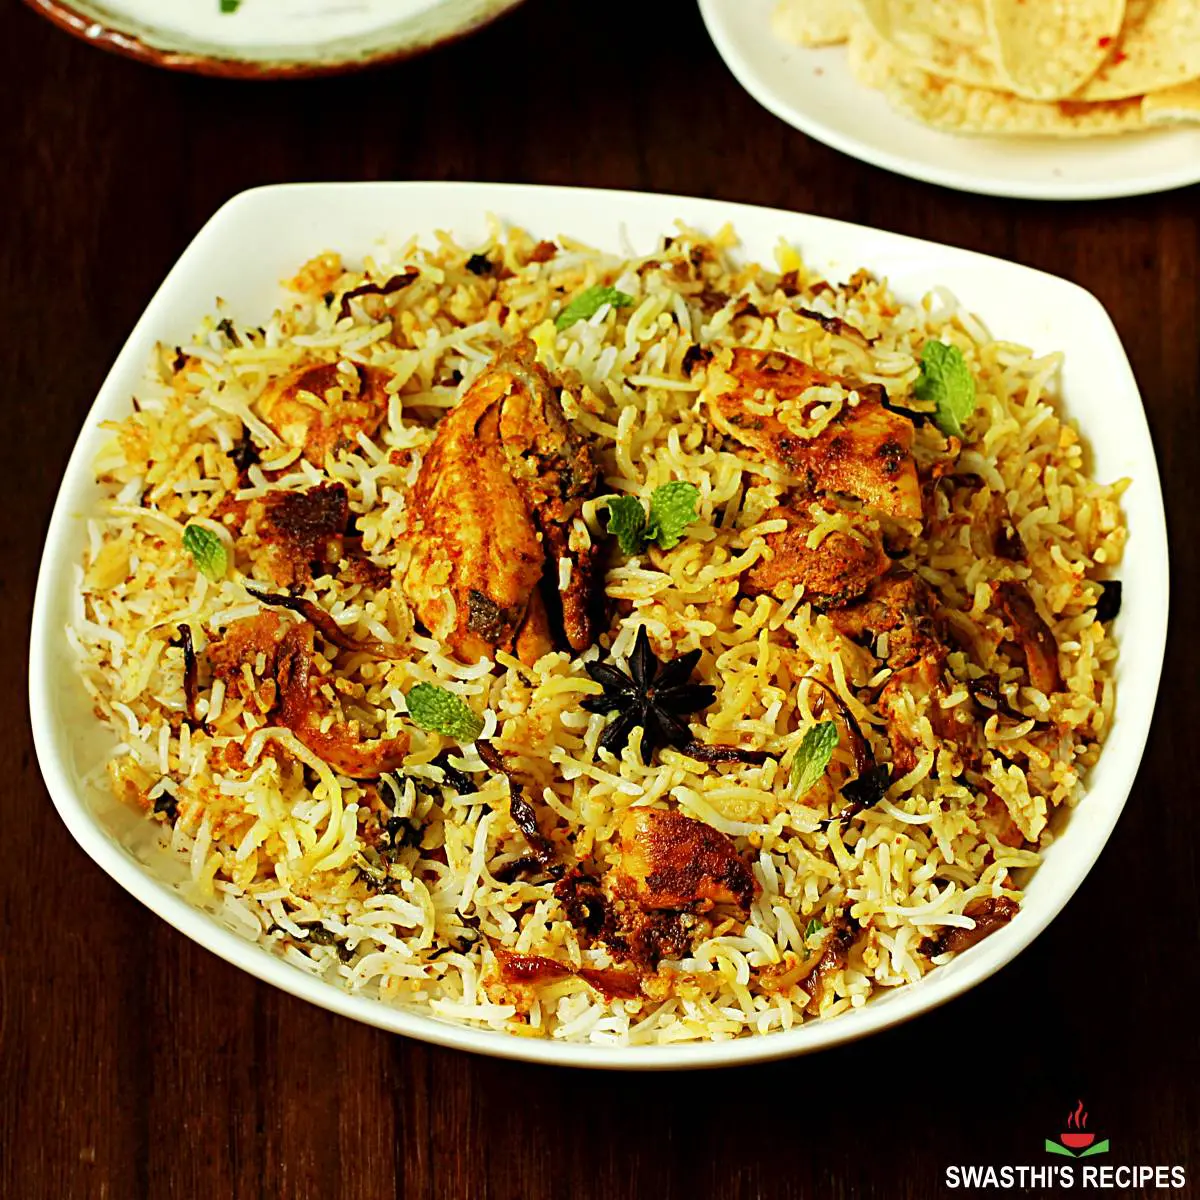 Hyderabadi biryani recipe with chicken